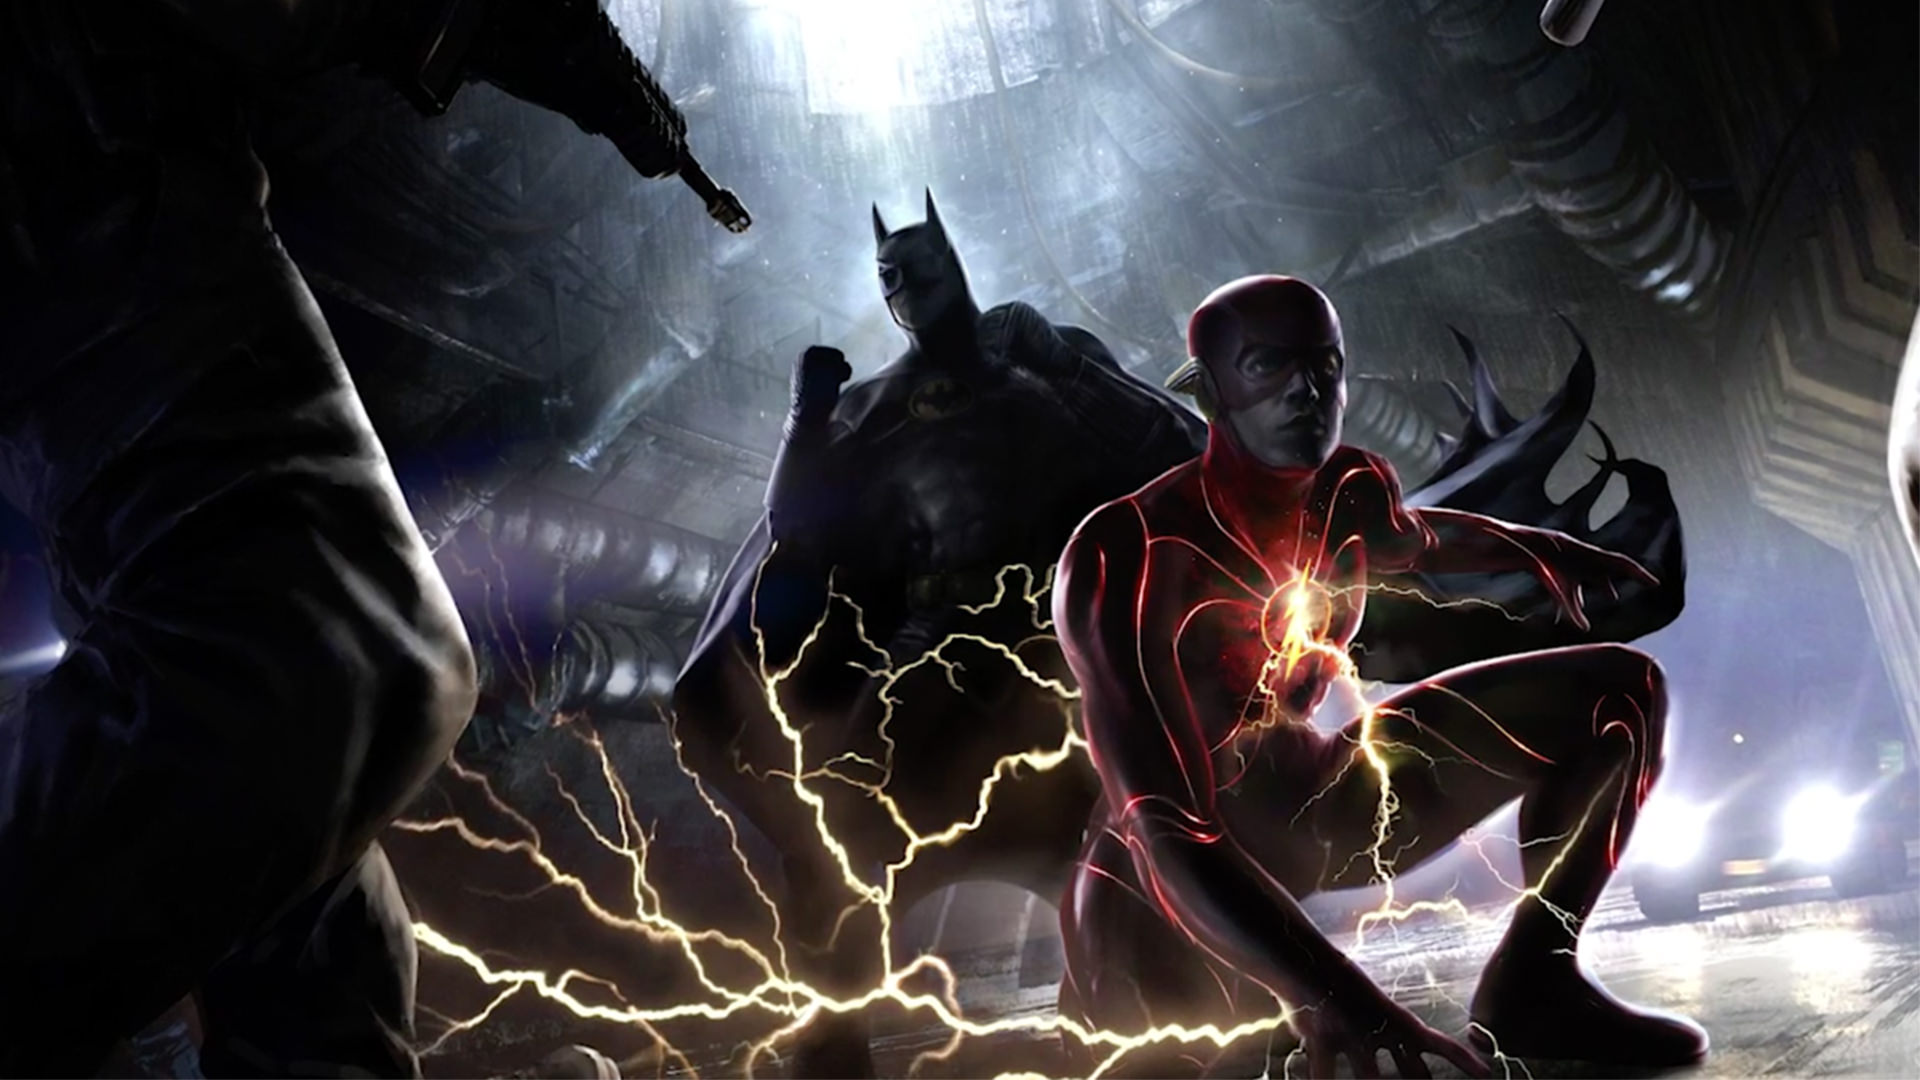 تاریخ شروع فیلمبرداری فیلم The Flash احتمالا مشخص شده است